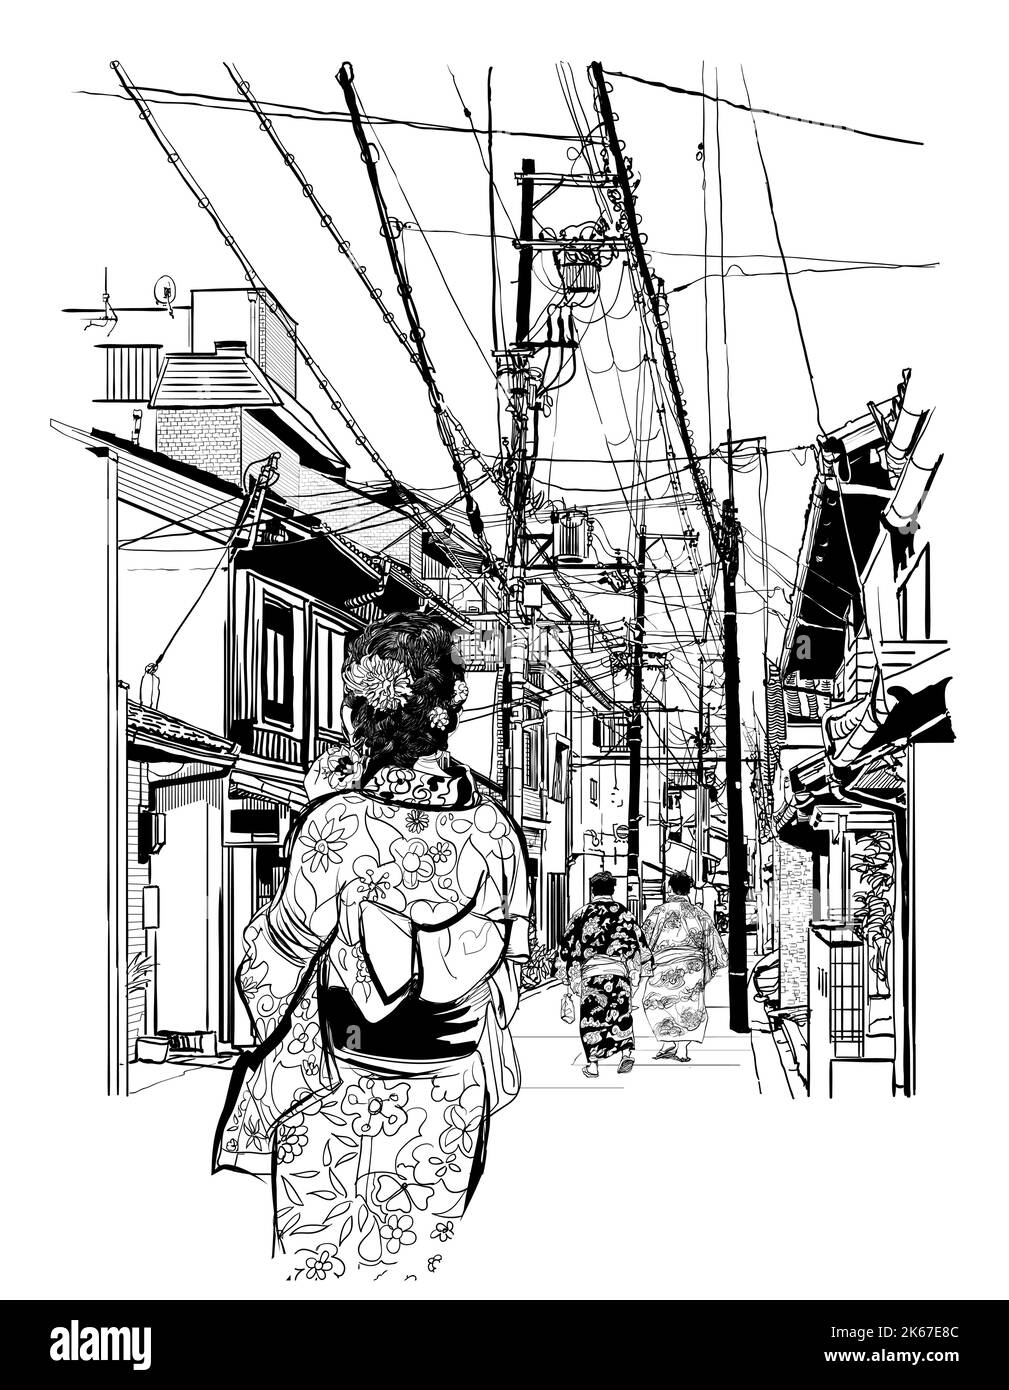 Giappone, strada a Kyoto con pedoni - illustrazione vettoriale (i caratteri giapponesi sono falsi - nessun significato) (ideale per la stampa, poster o carta da parati, ho Illustrazione Vettoriale